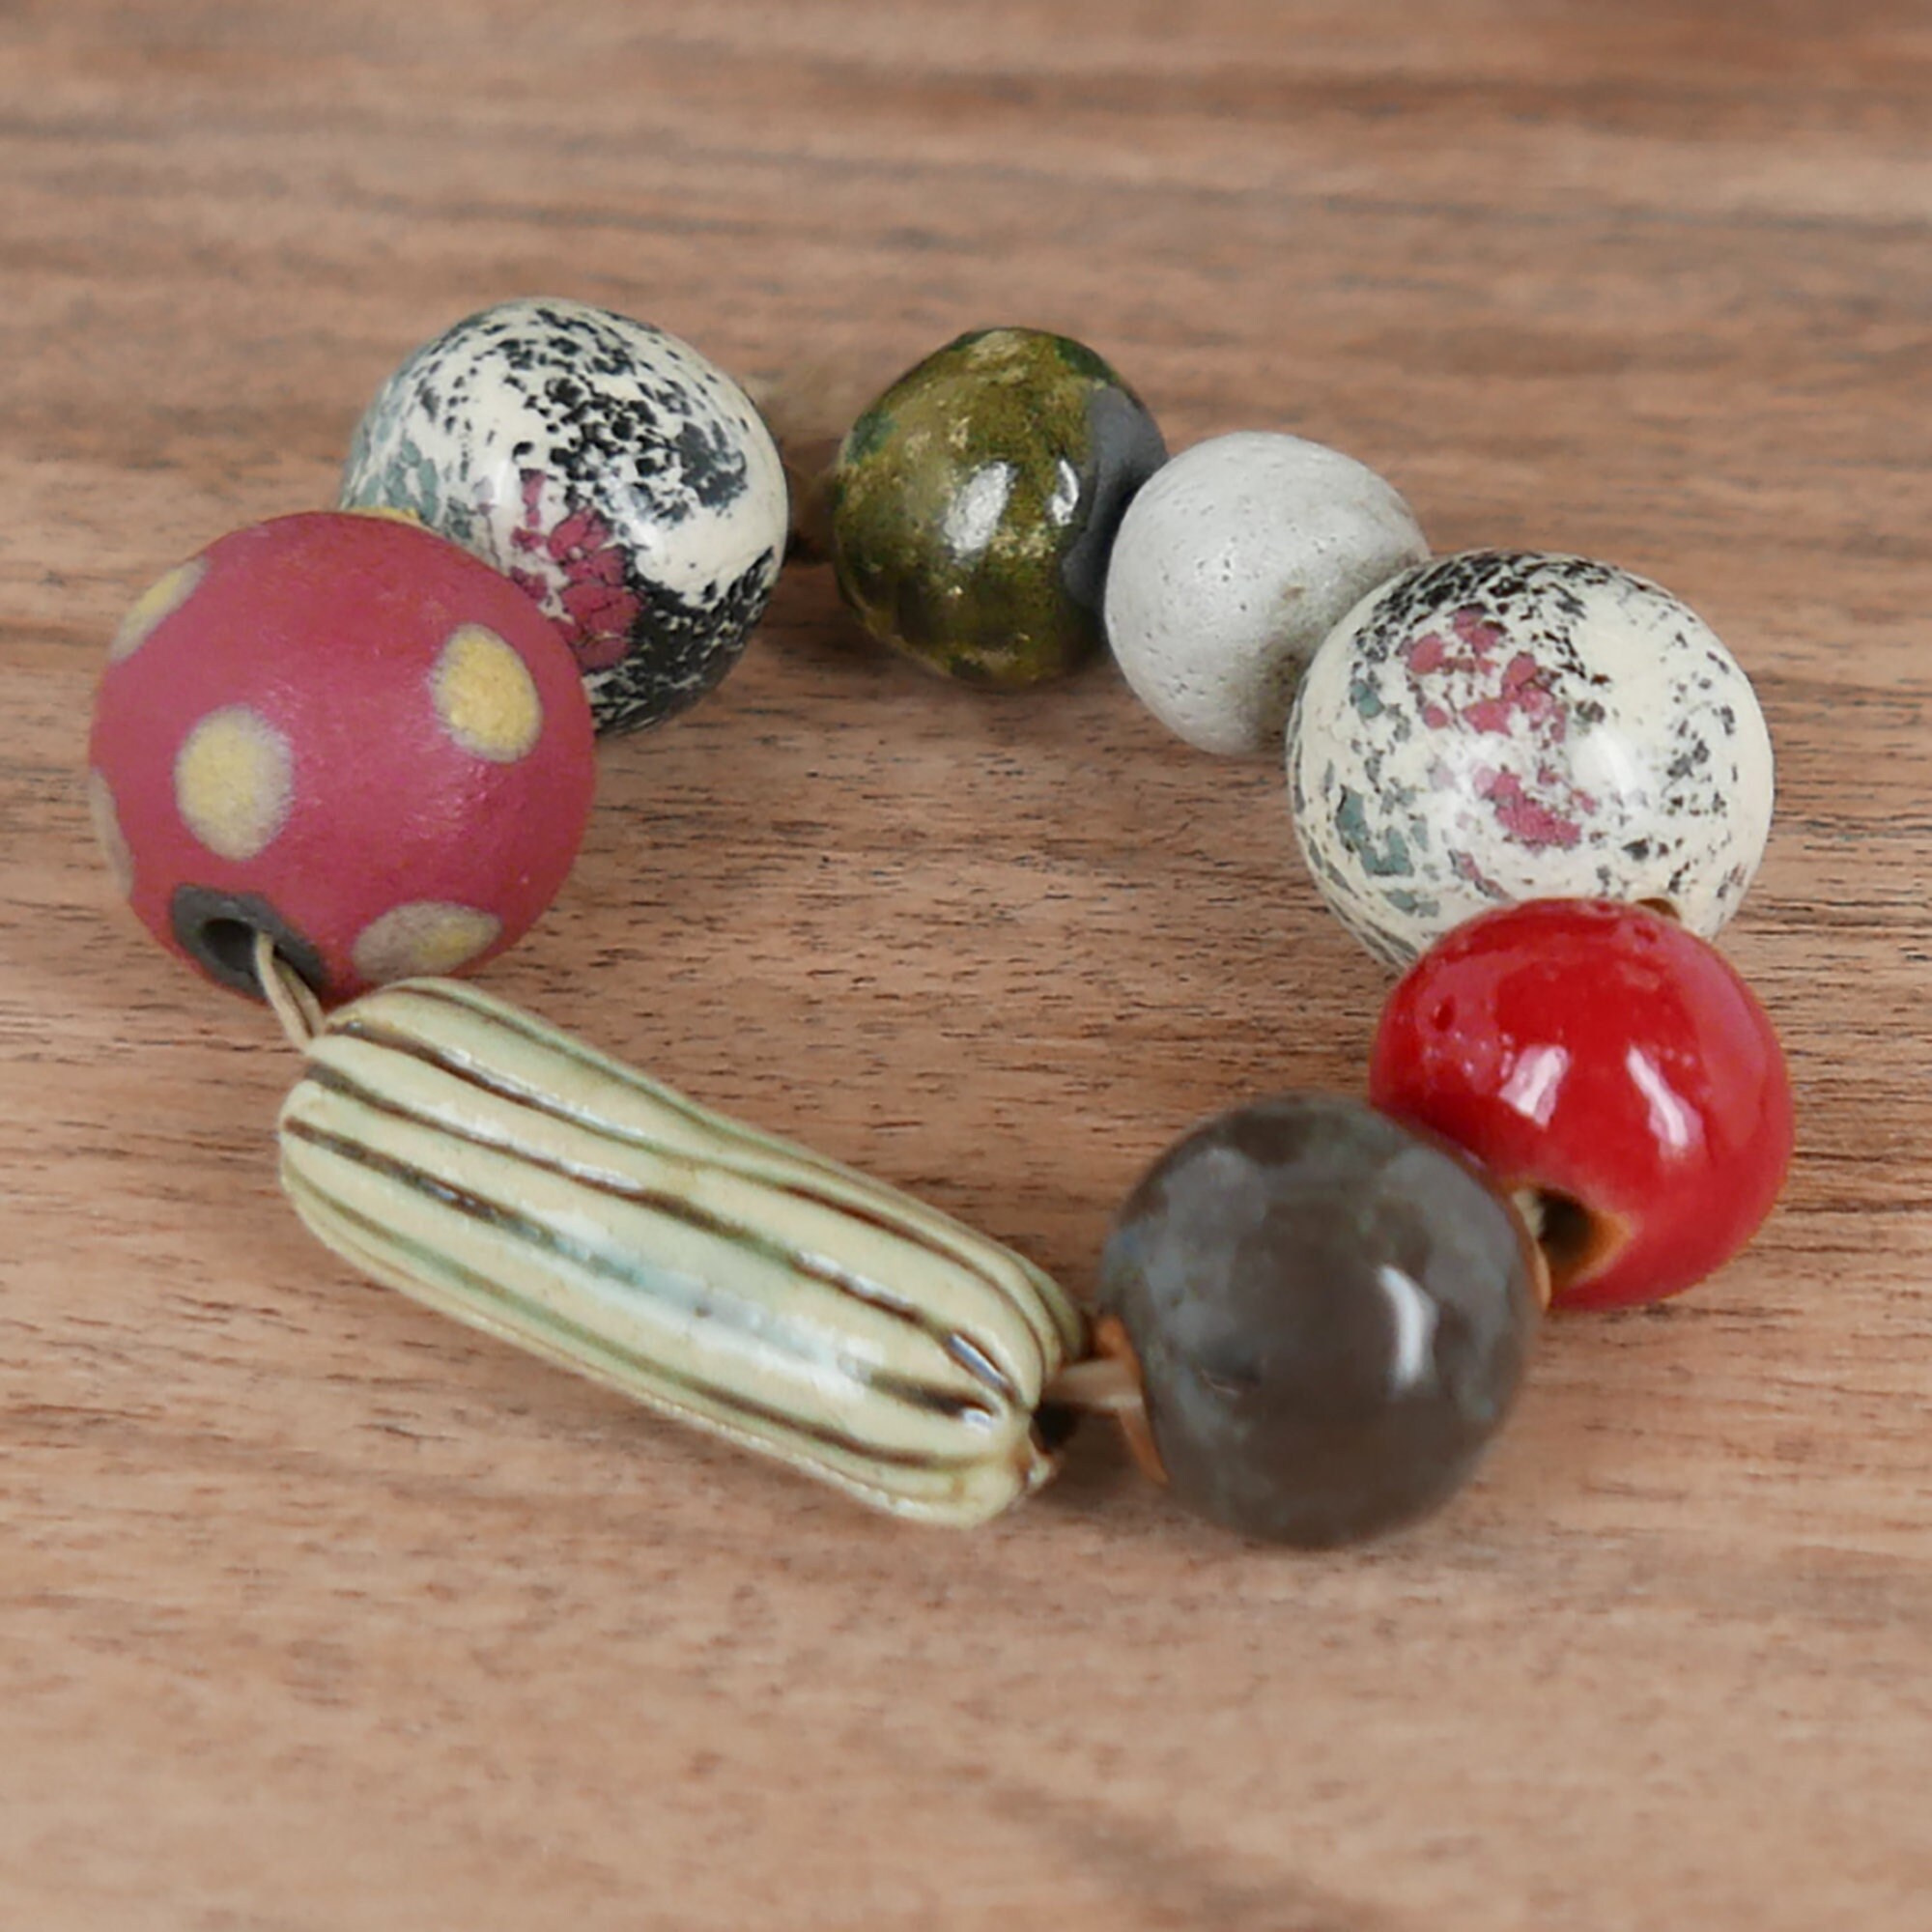 10 or 25 Pcs - 8mm Tibetan Silver Spacer Beads - Metal Spacer Beads -  Silver Beads - Jewelry Supplies